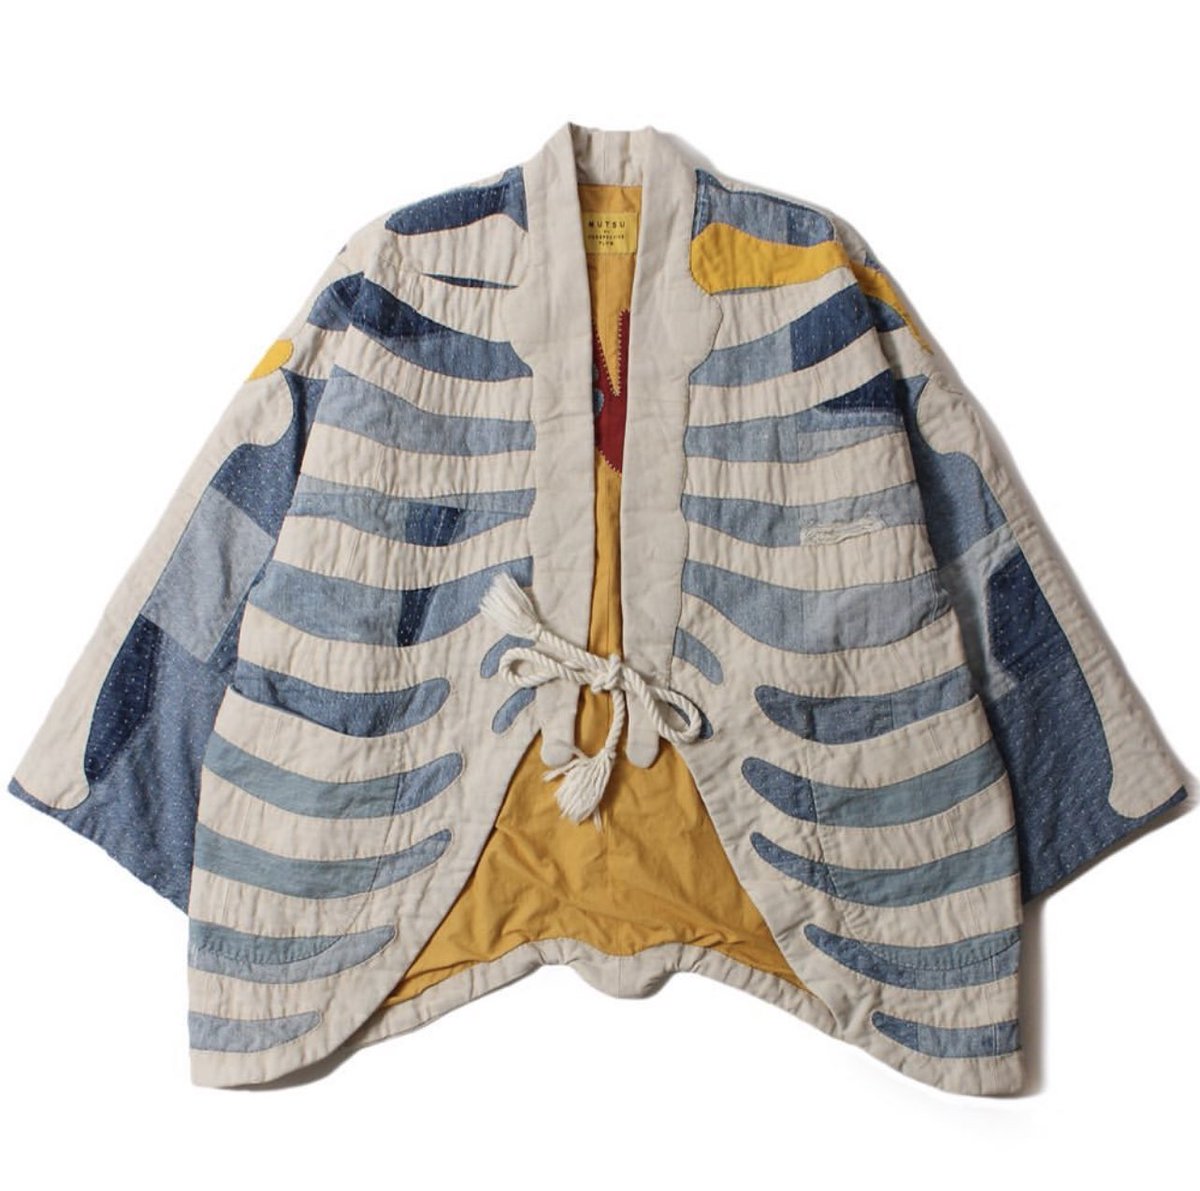 Rib-cage Kimono by MUTSU (2022)